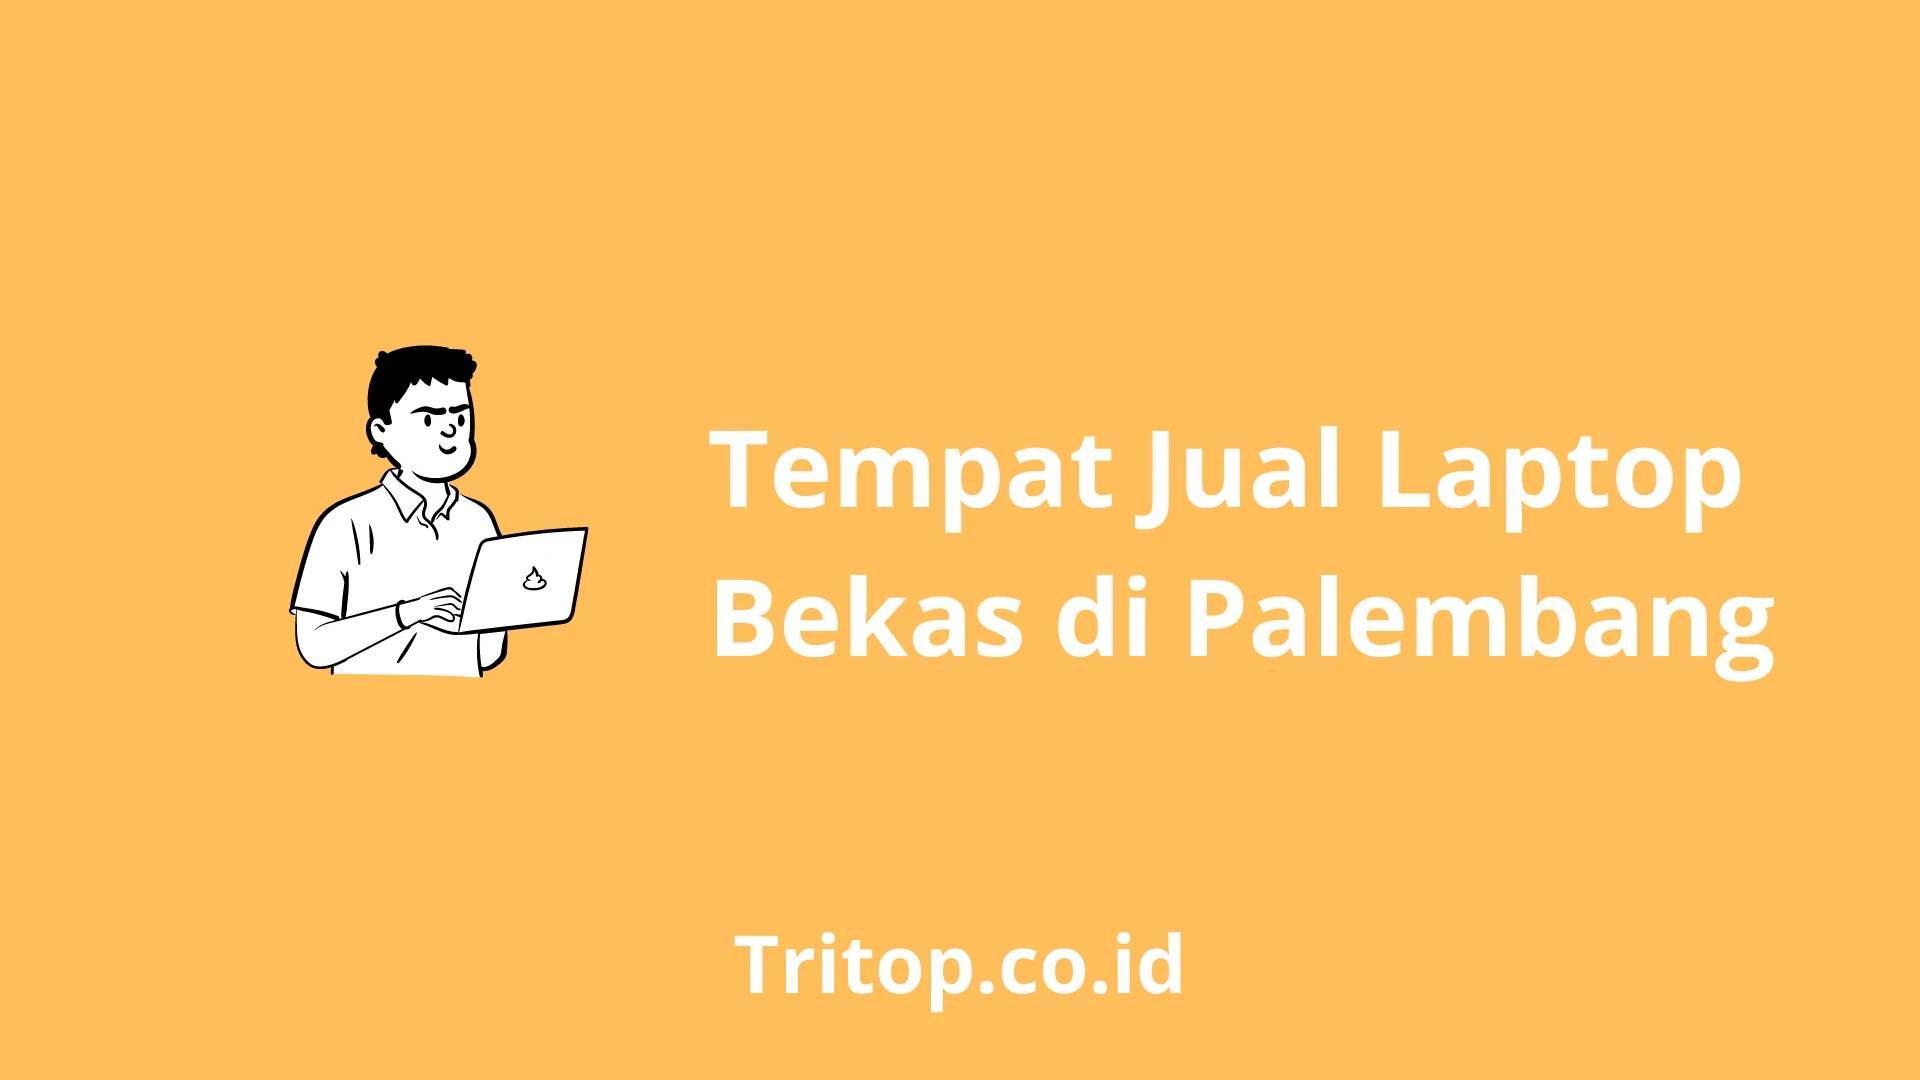 Tempat Jual Laptop Bekas Palembang tritop.co.id